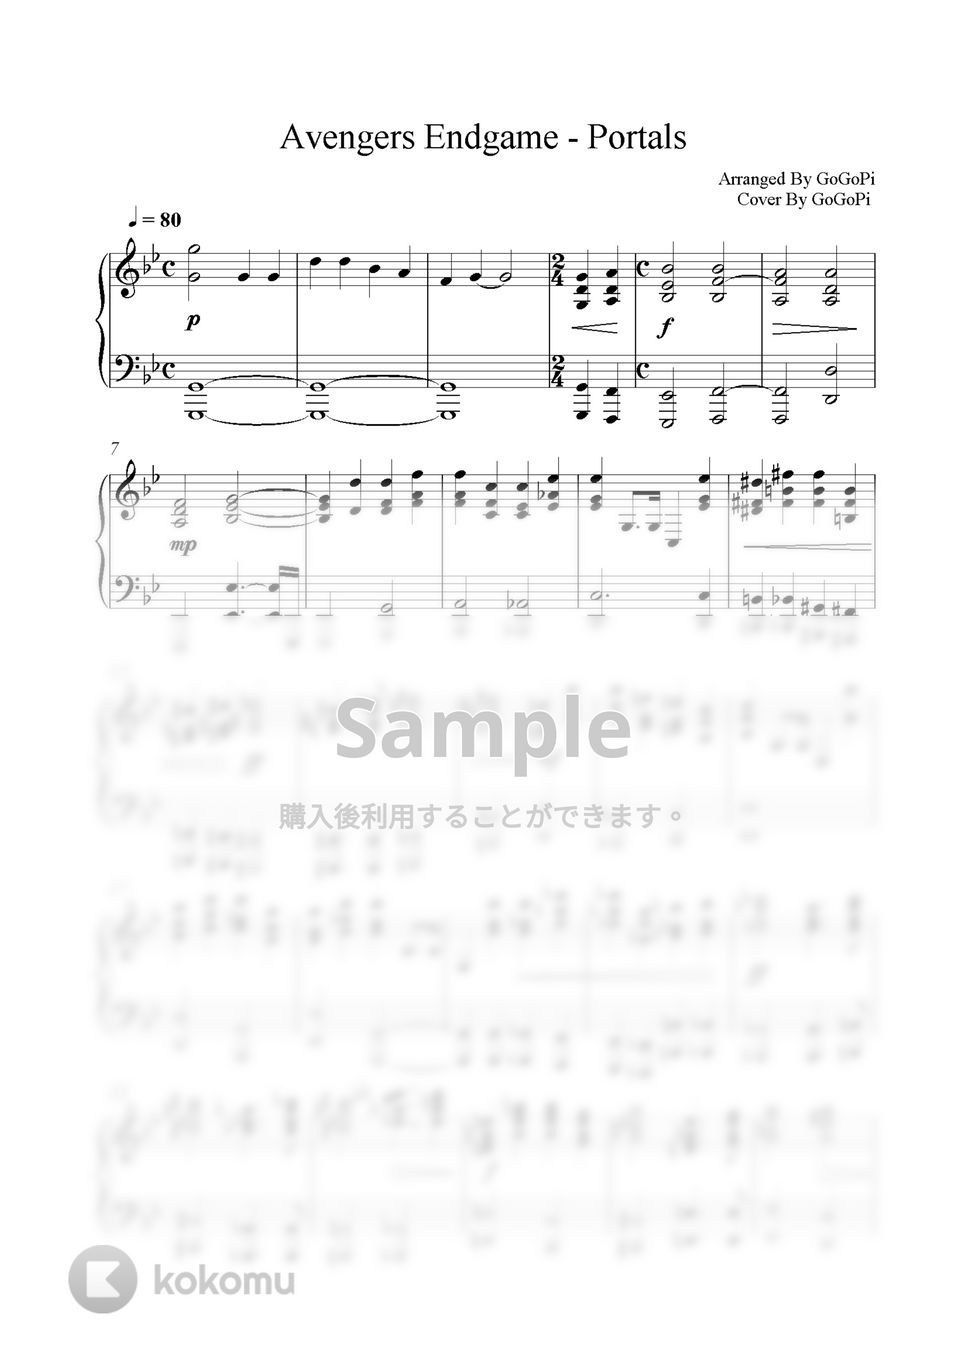 Alan Silvestri - Portals(アベンジャーズ/エンドゲーム) (Piano Version) by GoGoPiano